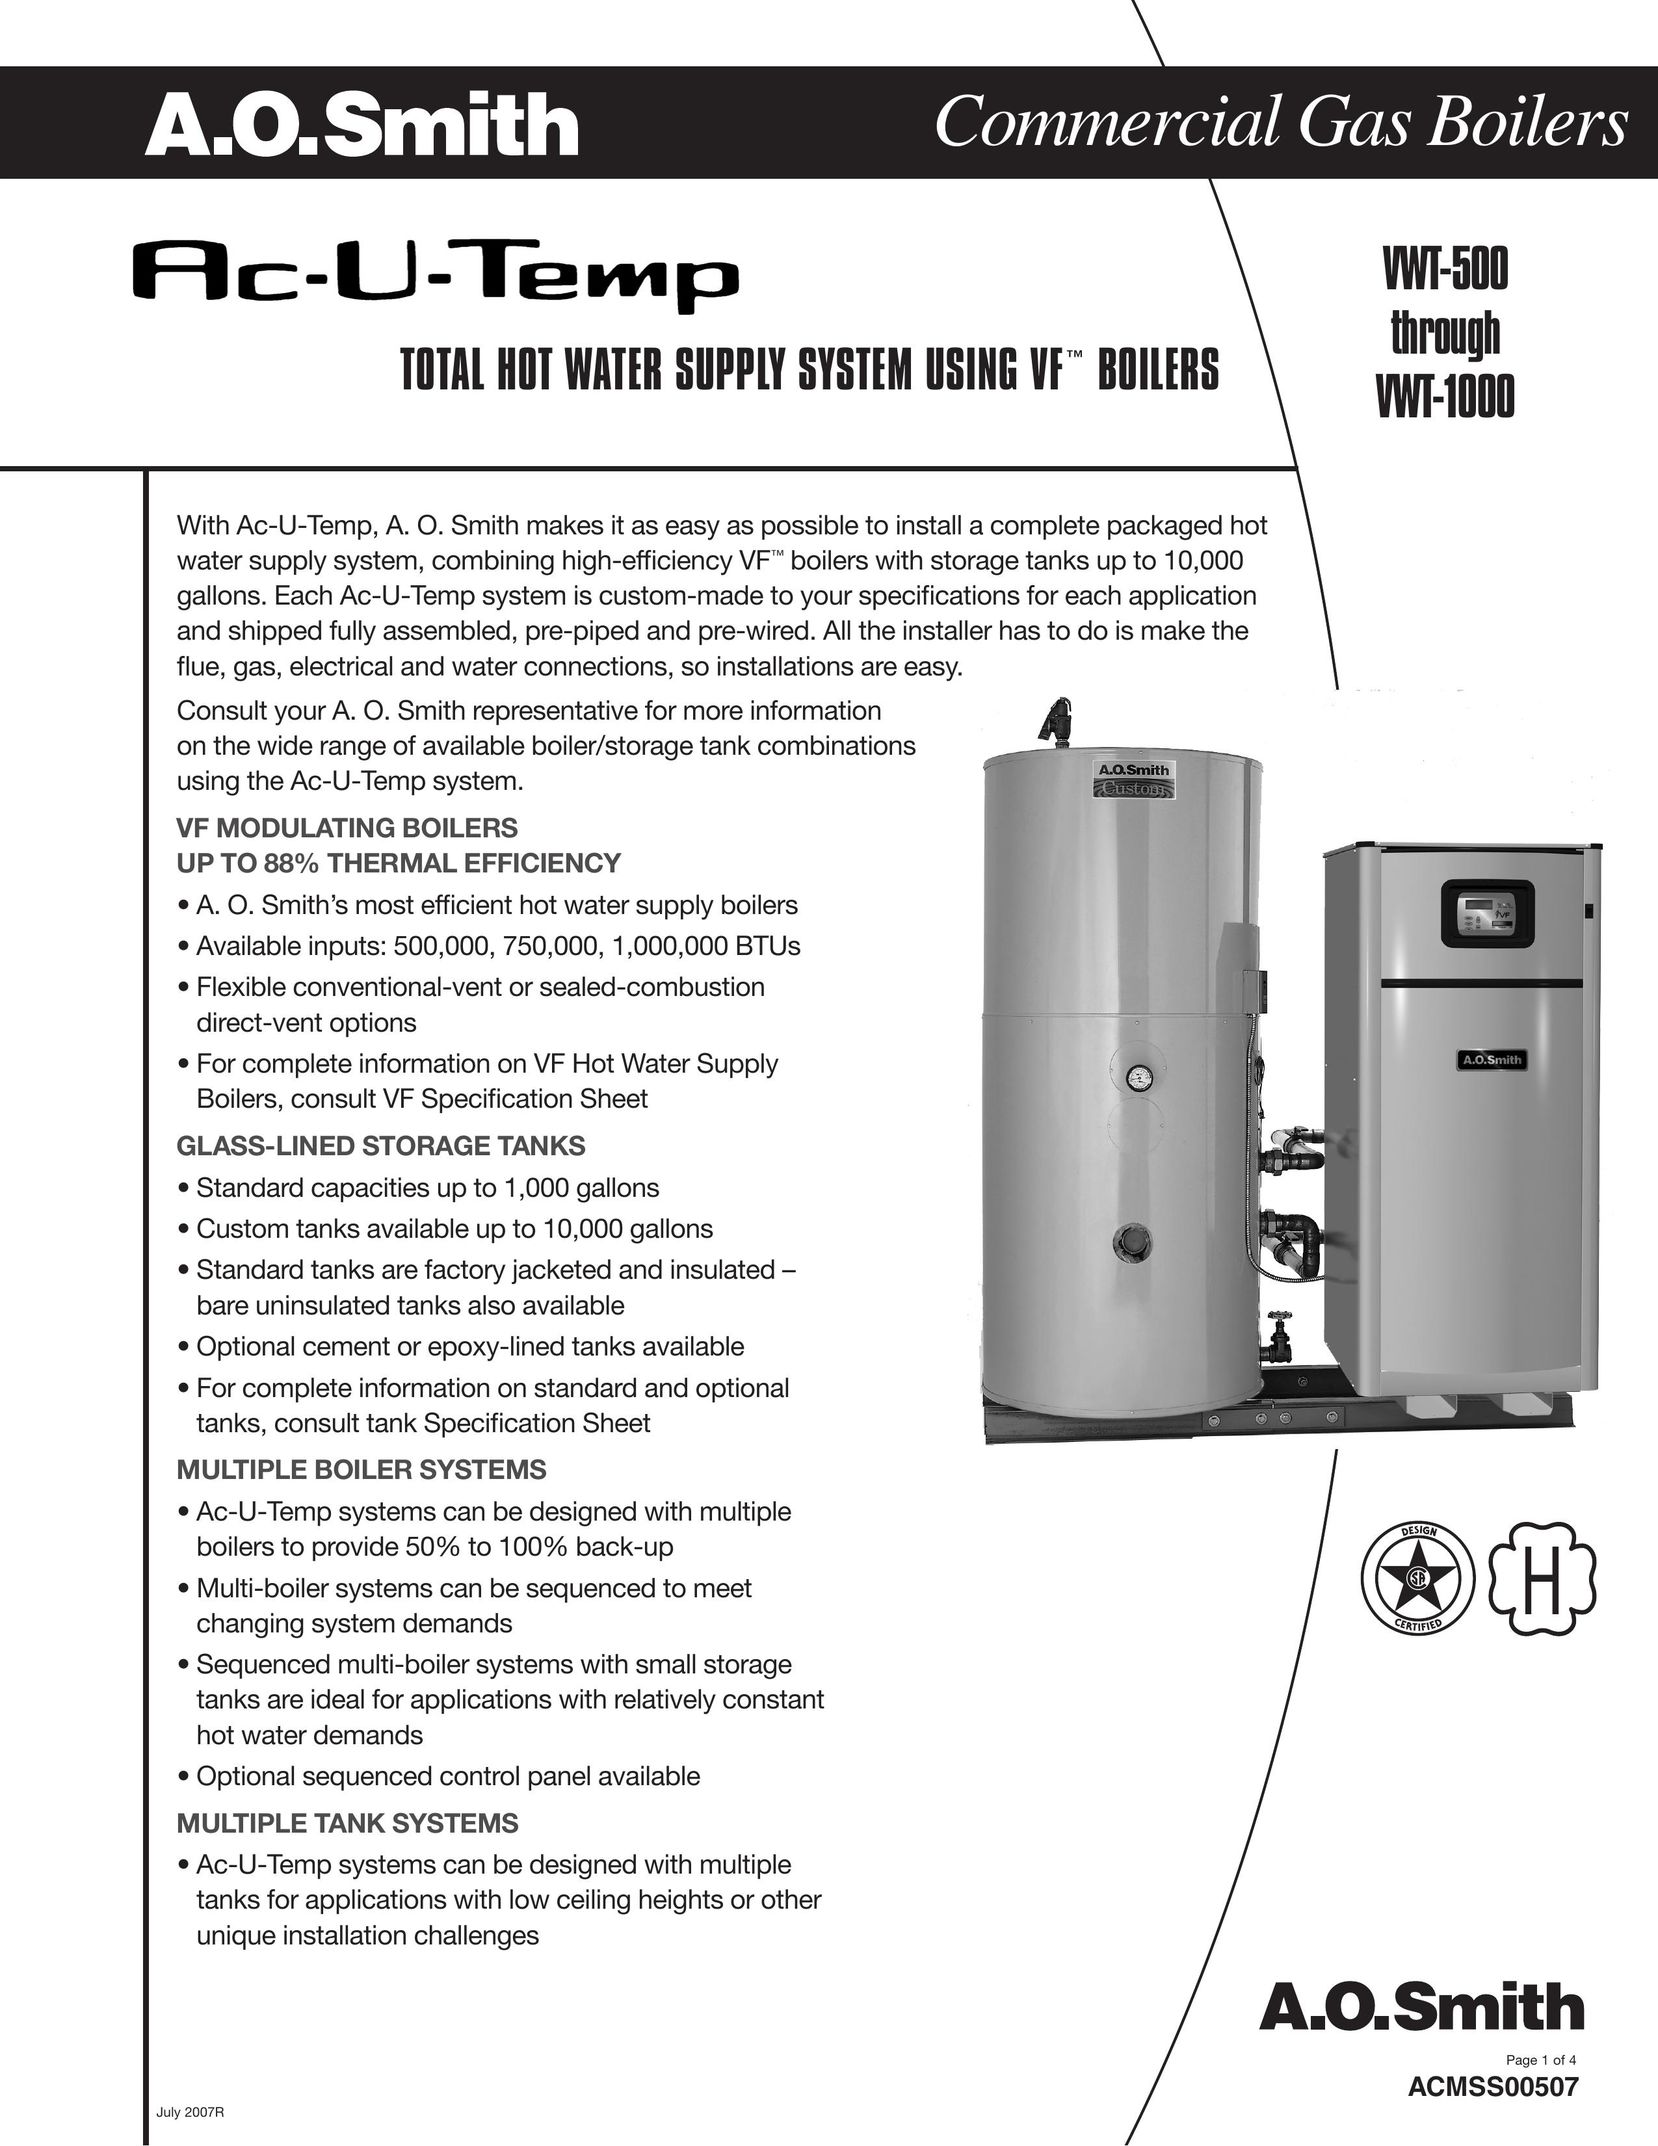 A.O. Smith VWT-500 Boiler User Manual